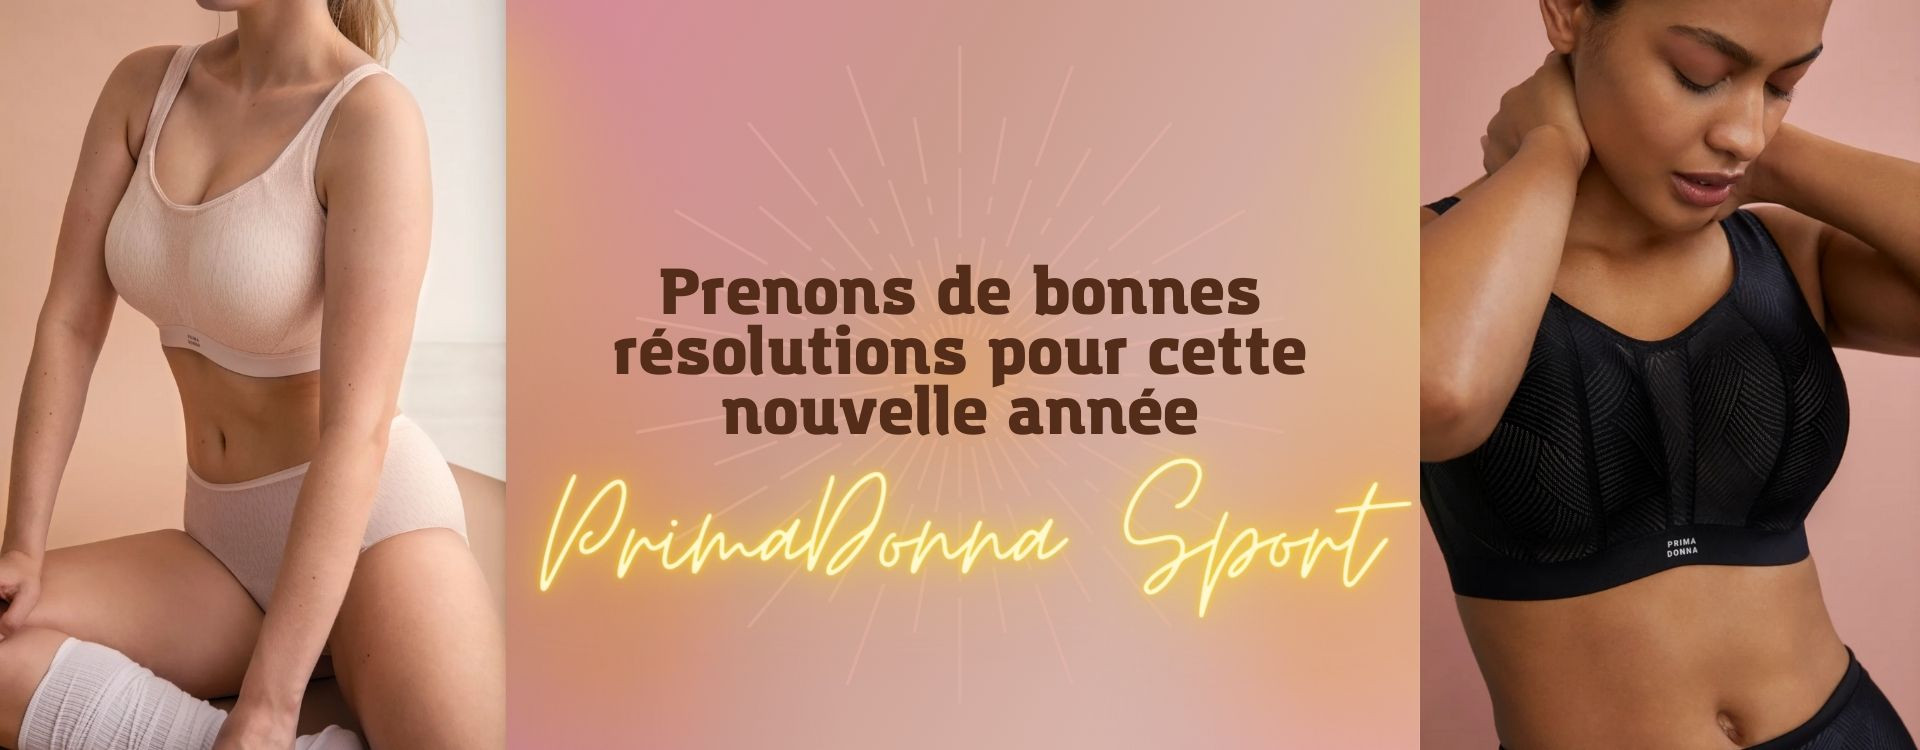 Prenons de bonnes résolutions pour cette nouvelle année, avec PrimaDonna Sport !